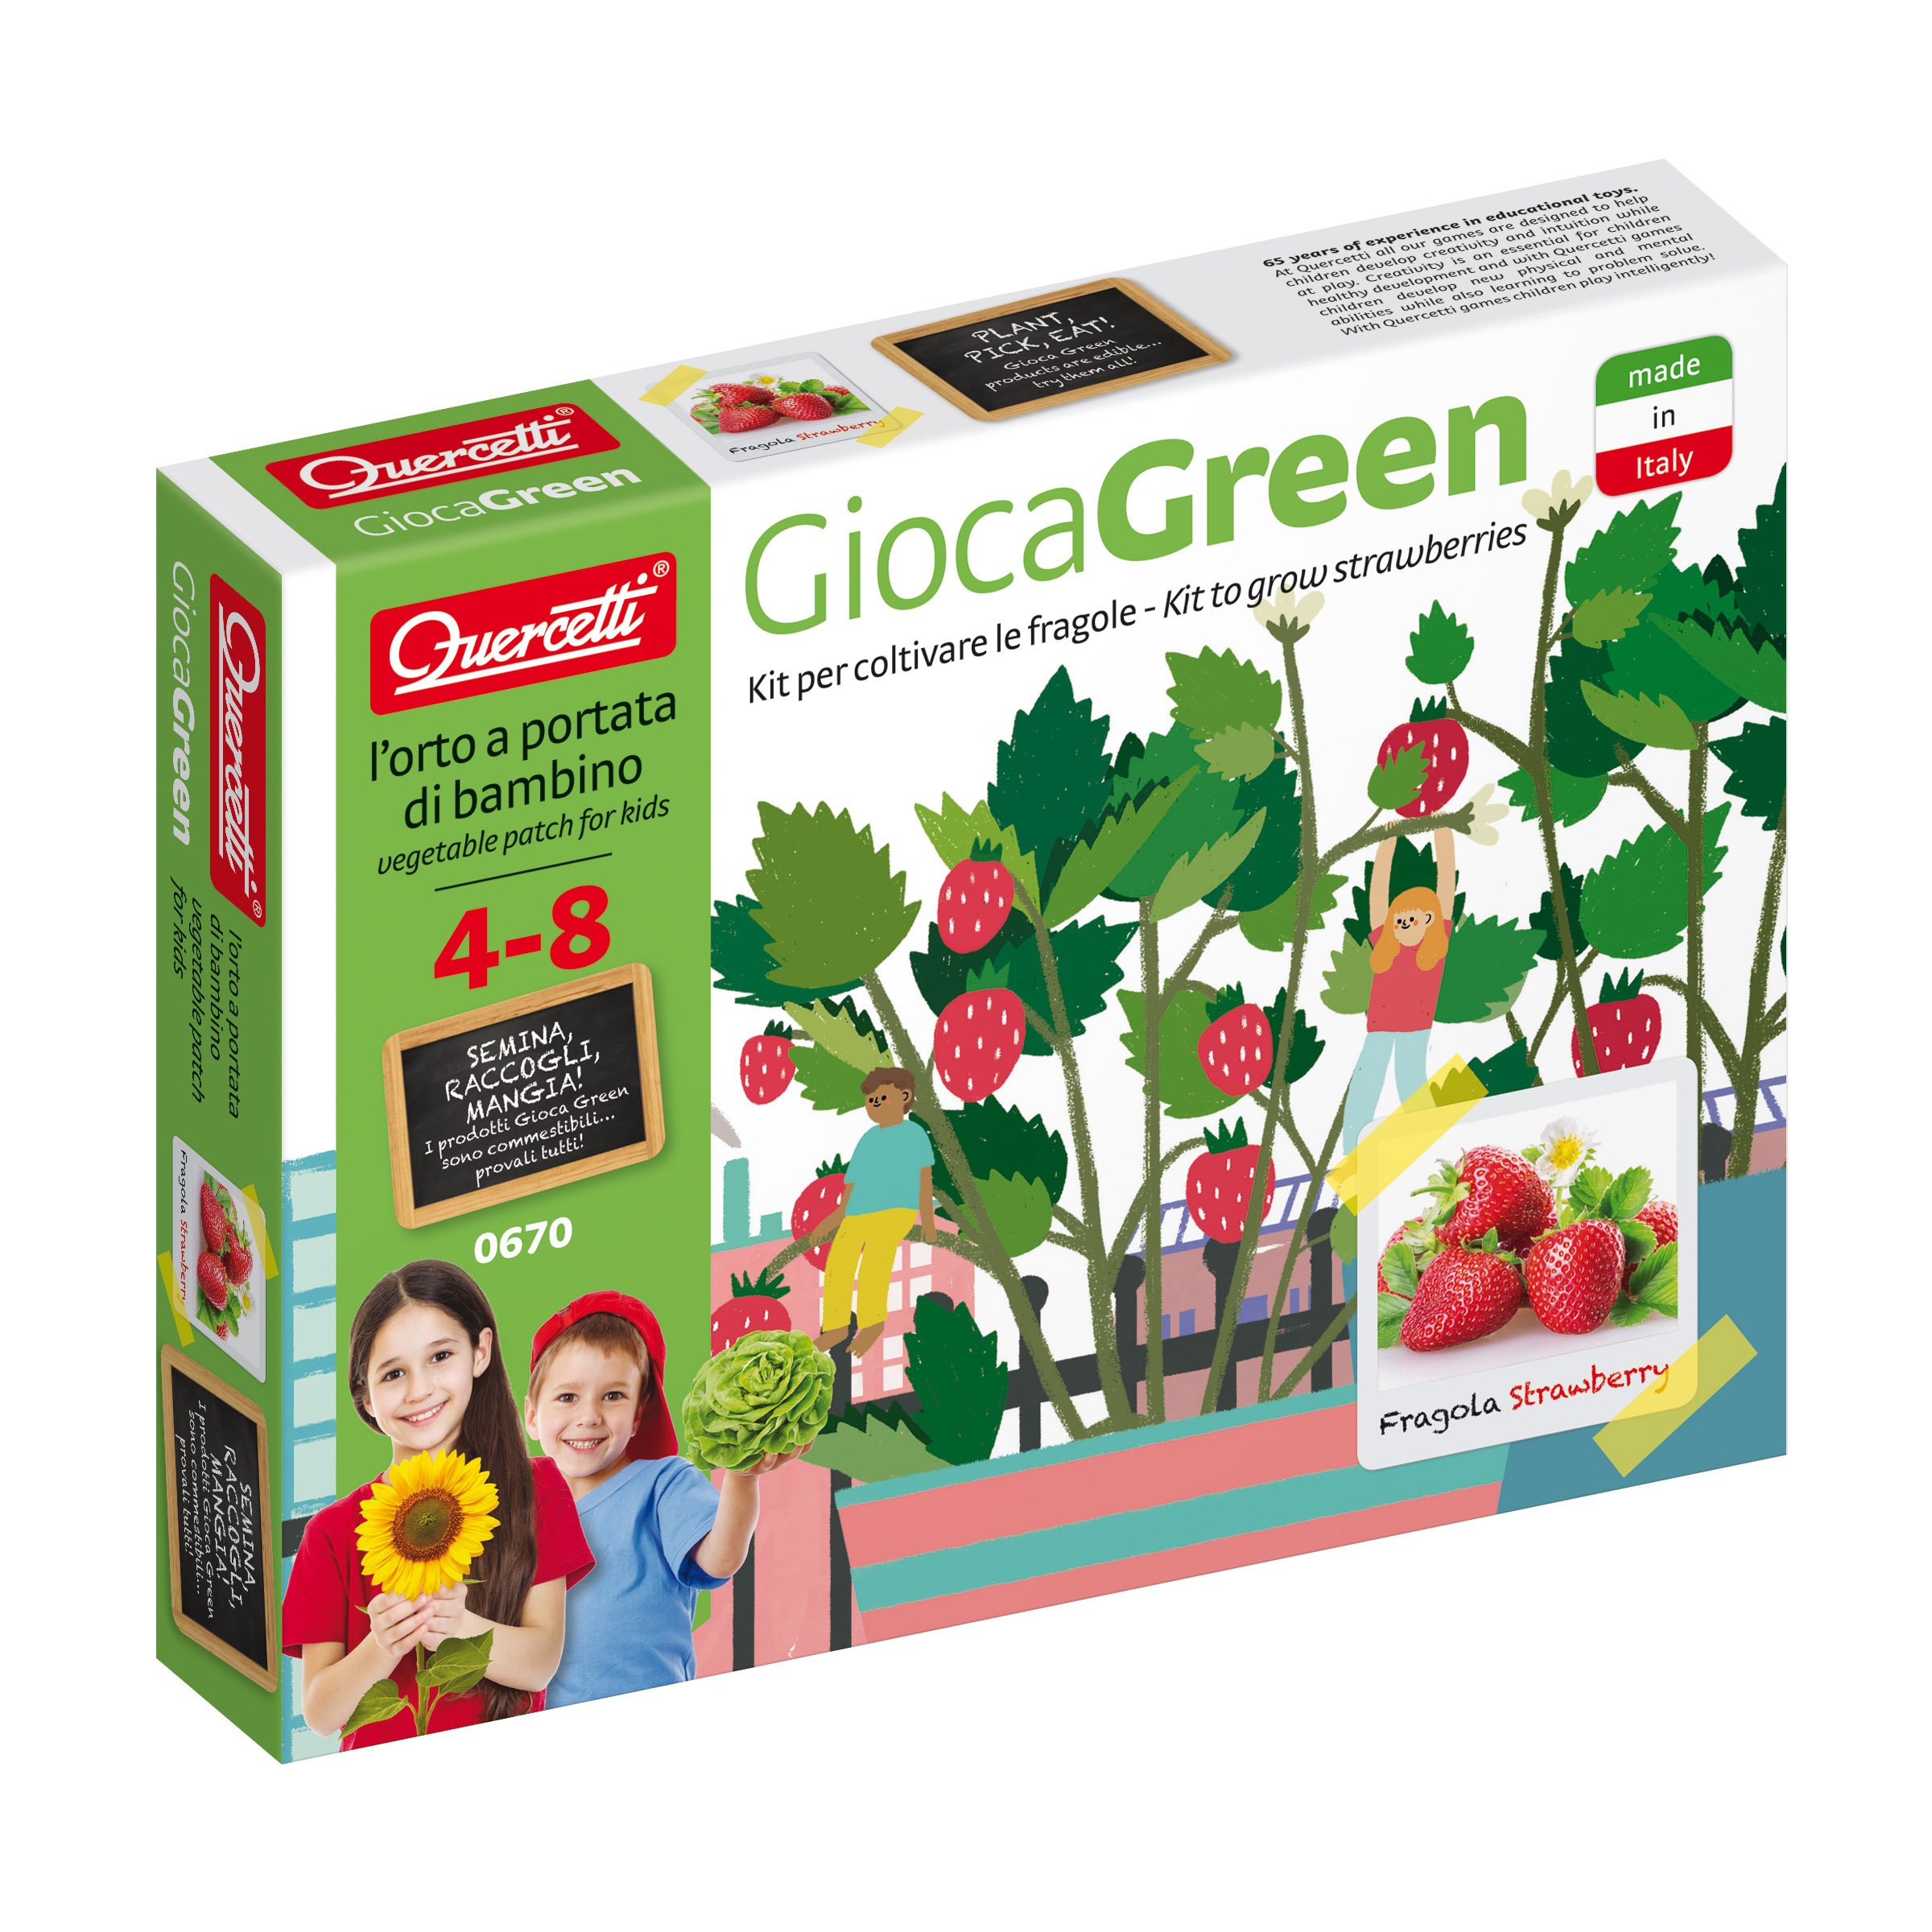 Quercetti Strawberry Green